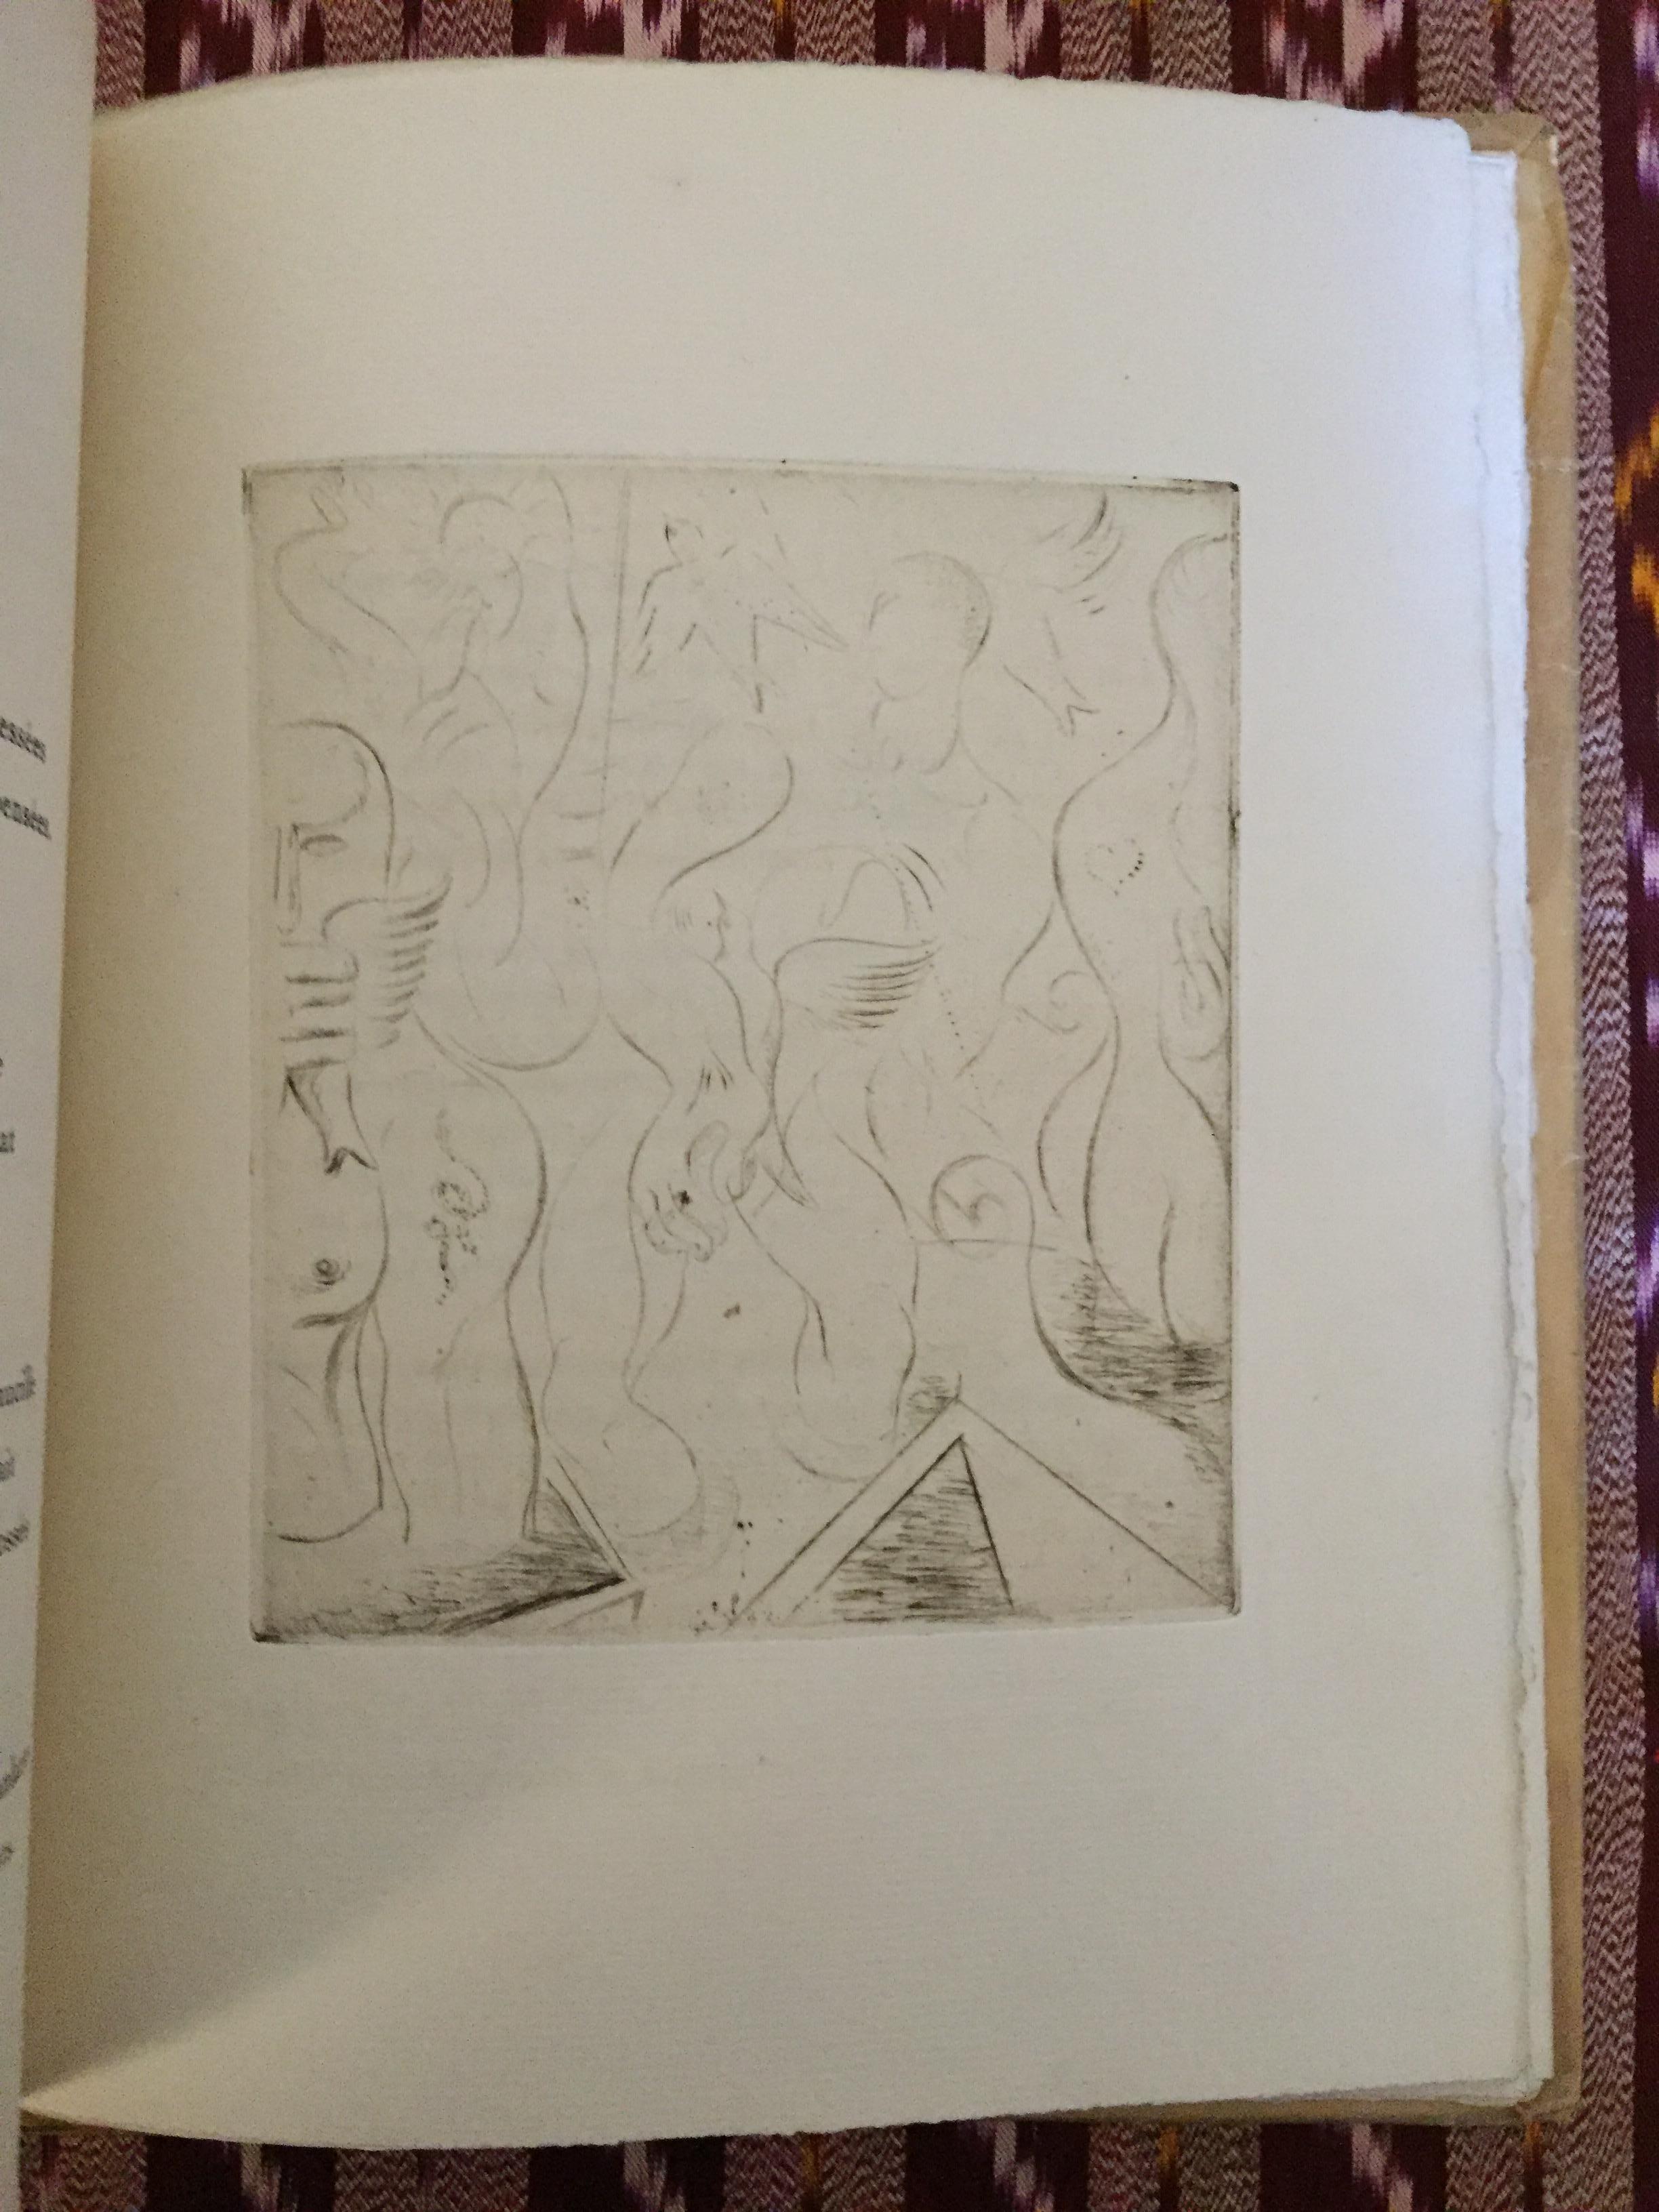 Auflage von 112 Exemplaren mit 4 Original-Radierungen des französischen Künstlers André Masson. 

Dieses Exemplar auf Verge d'Arches-Papier.

Ausgabe: Galerie Simon, Paris

Seiten: 15

Guter Zustand.